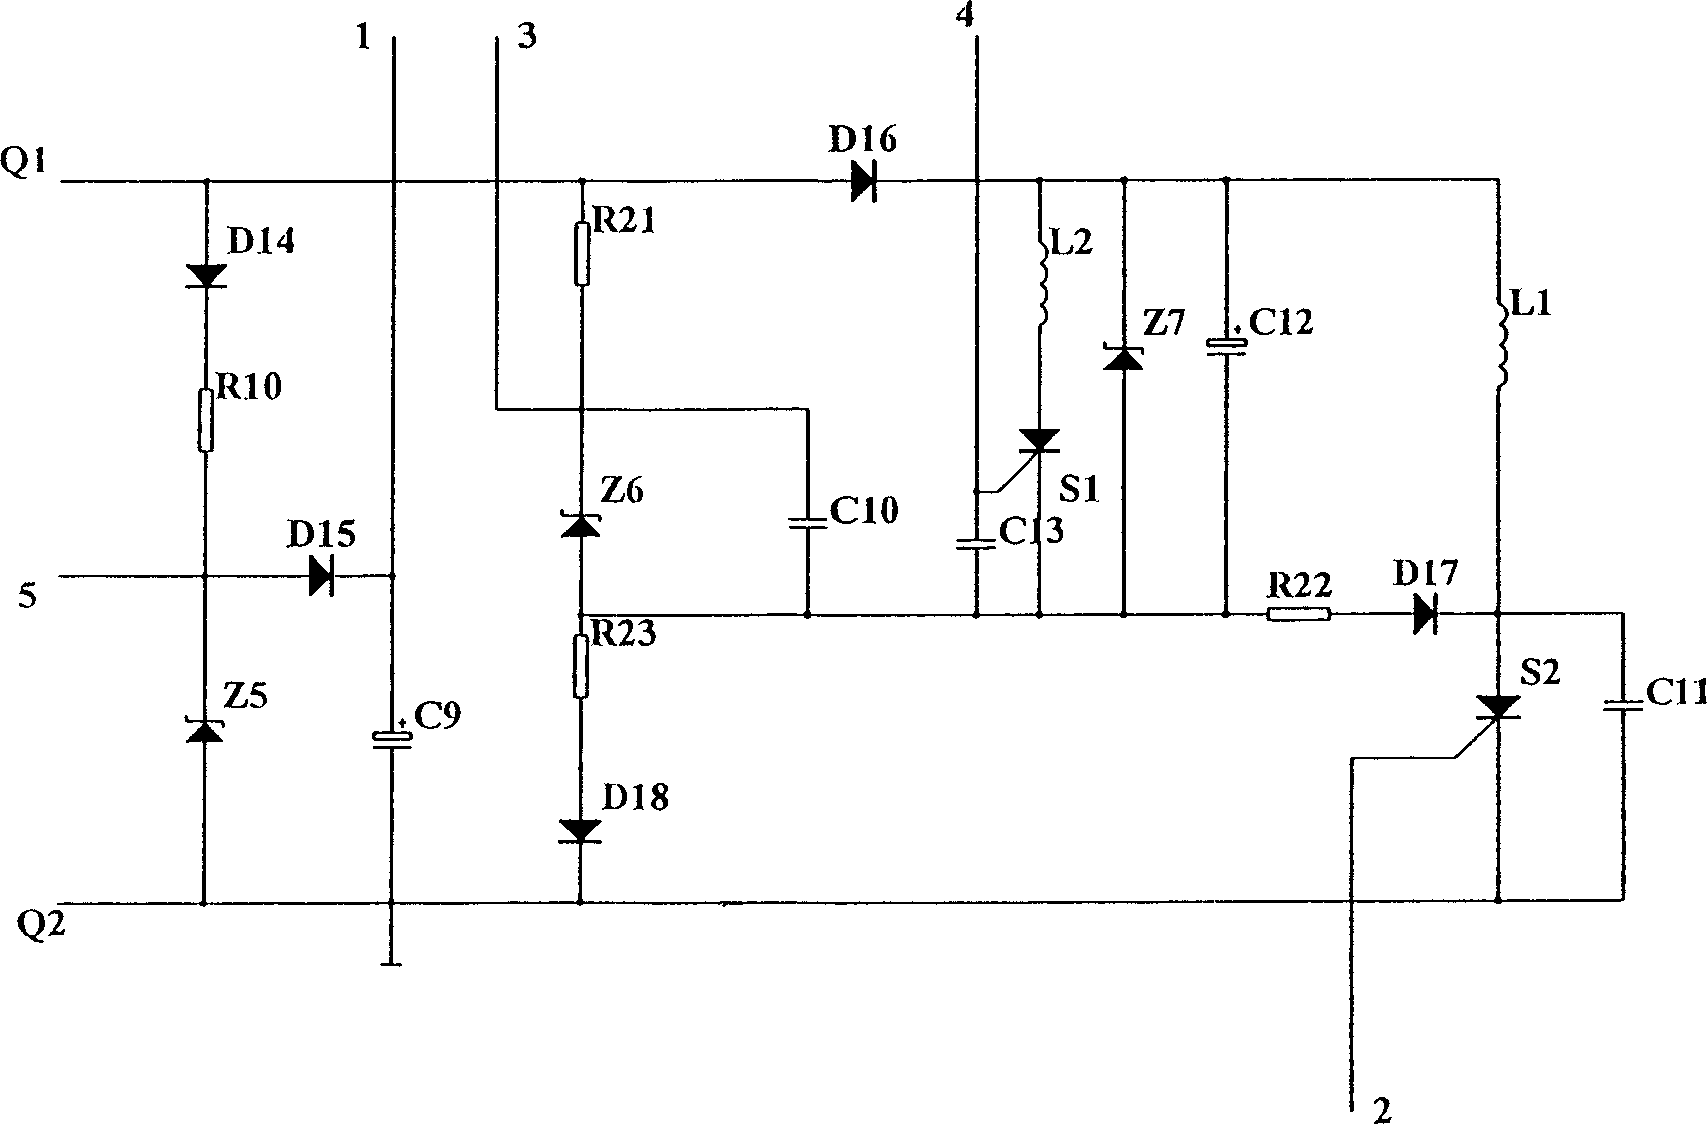 Under voltage release of low voltage circuit breaker